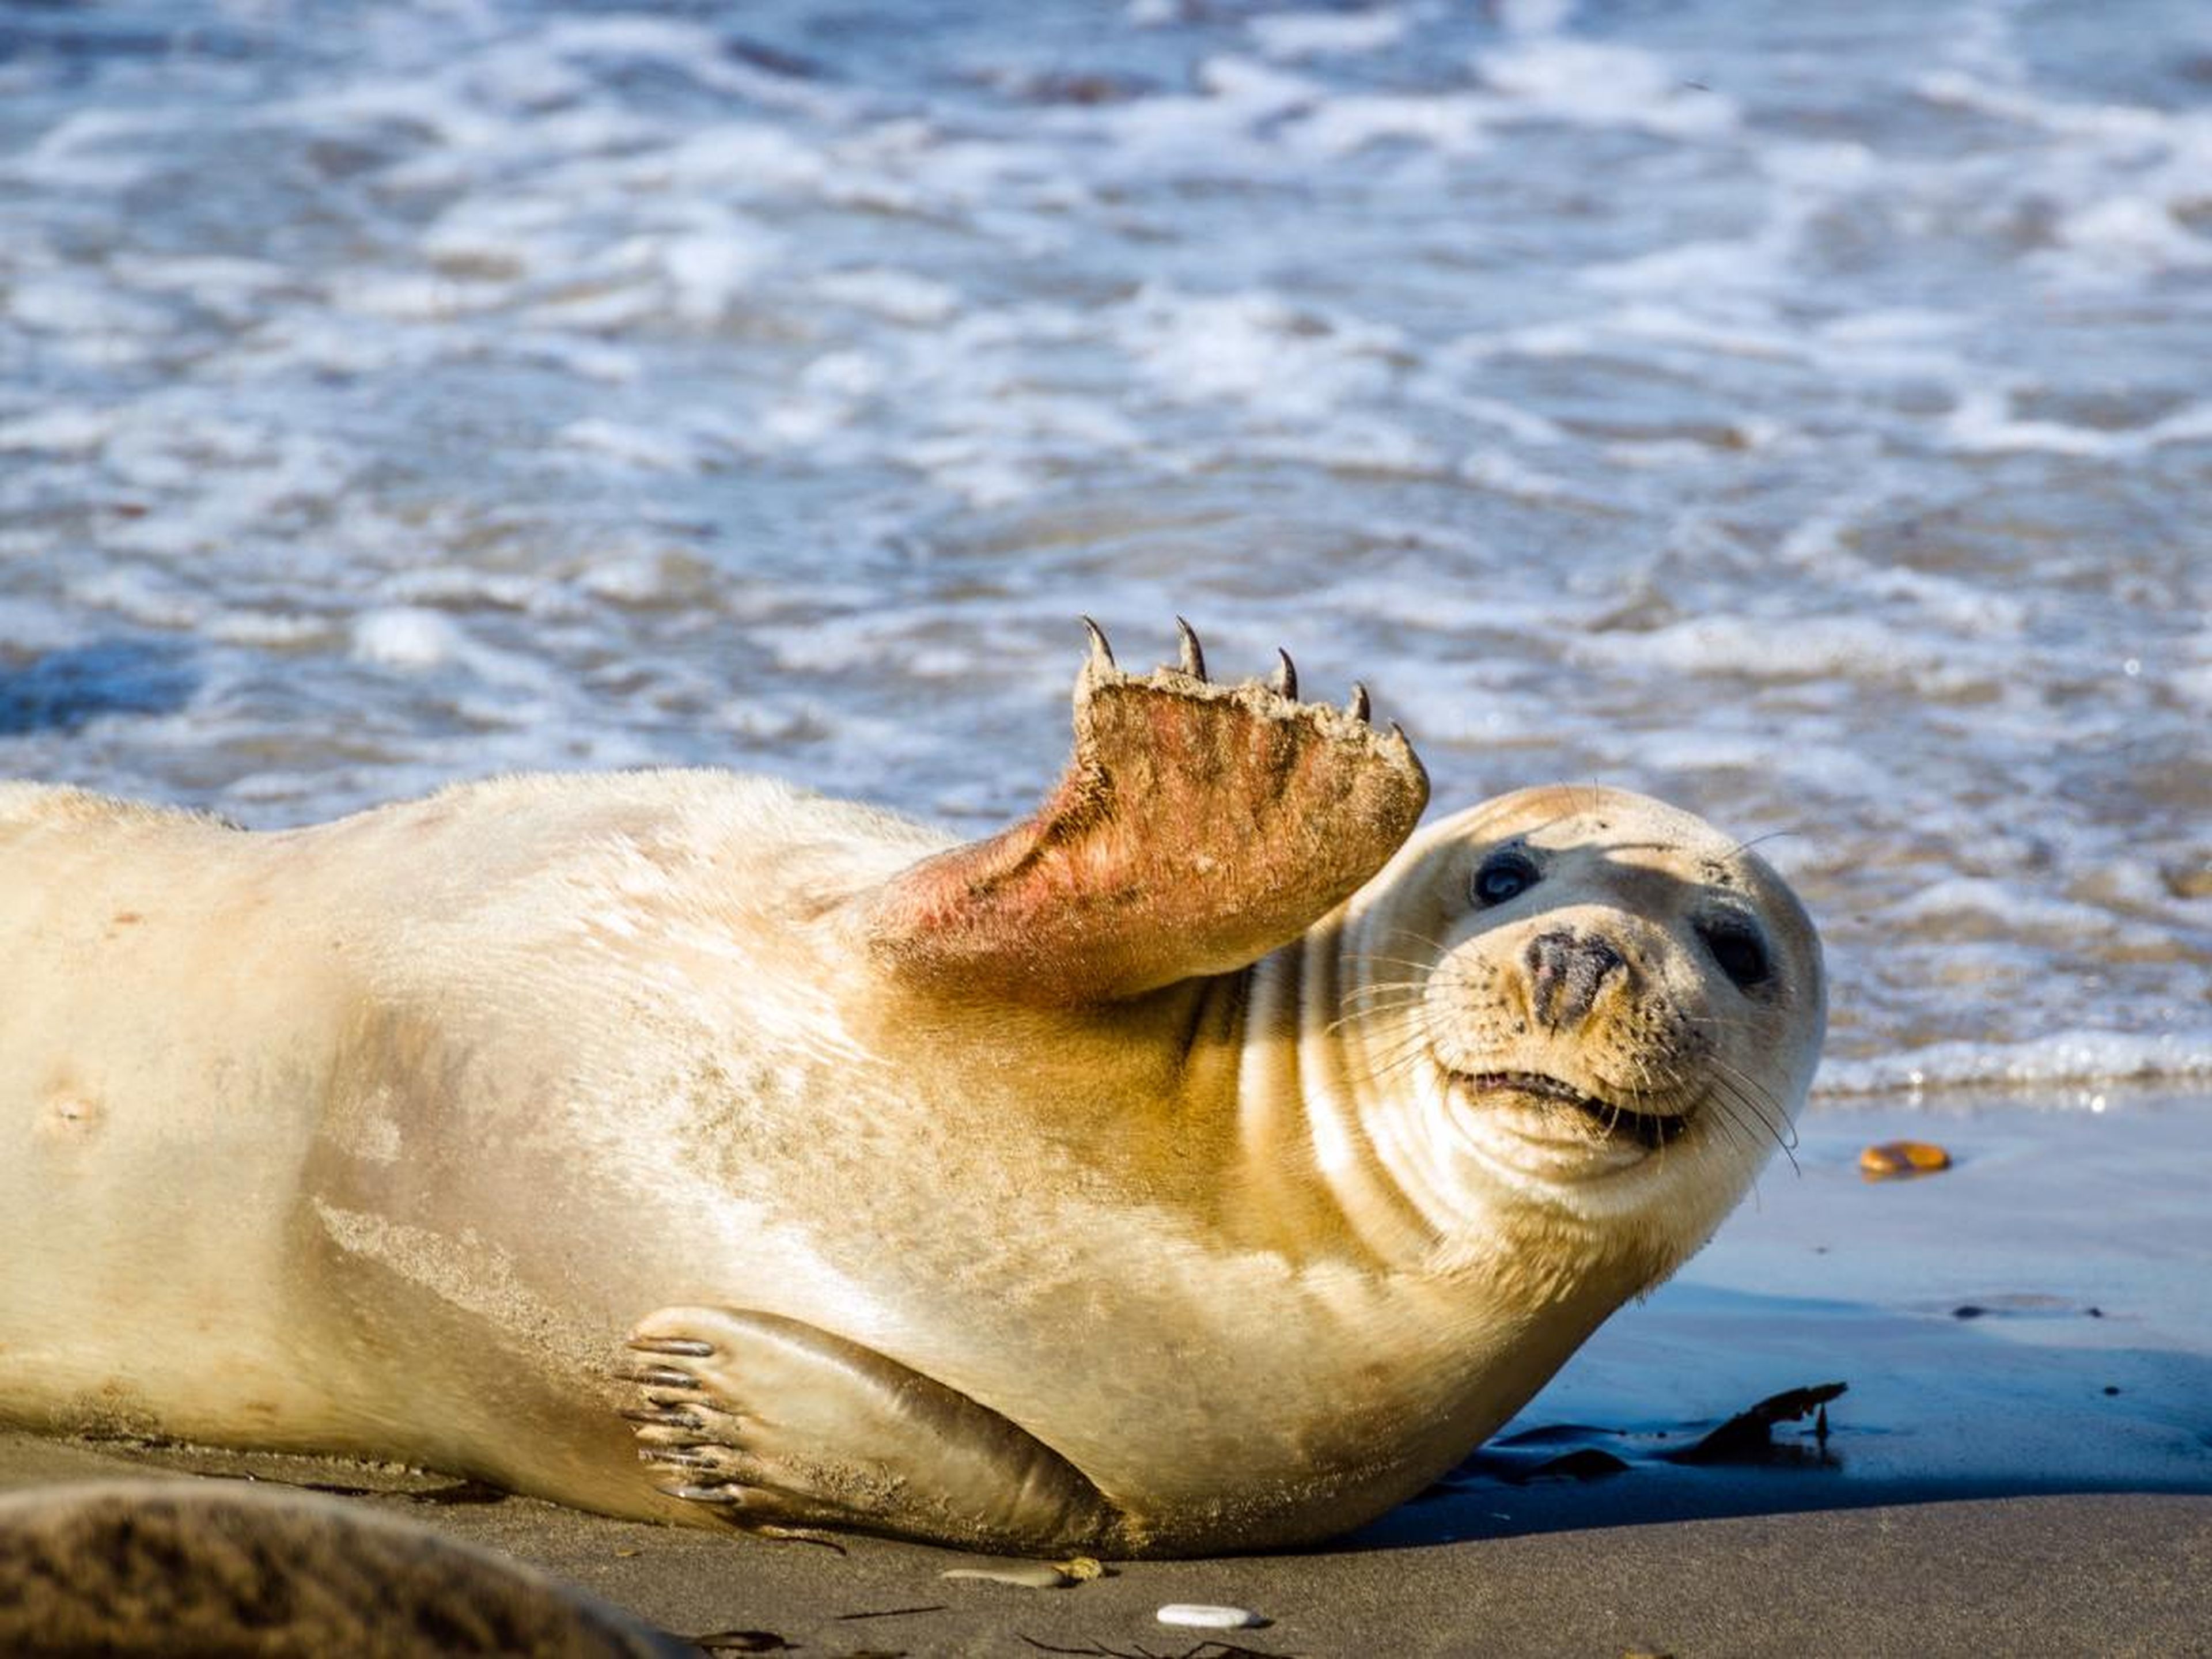 Esta foca súper social parece estar disfrutando del sol y la playa...